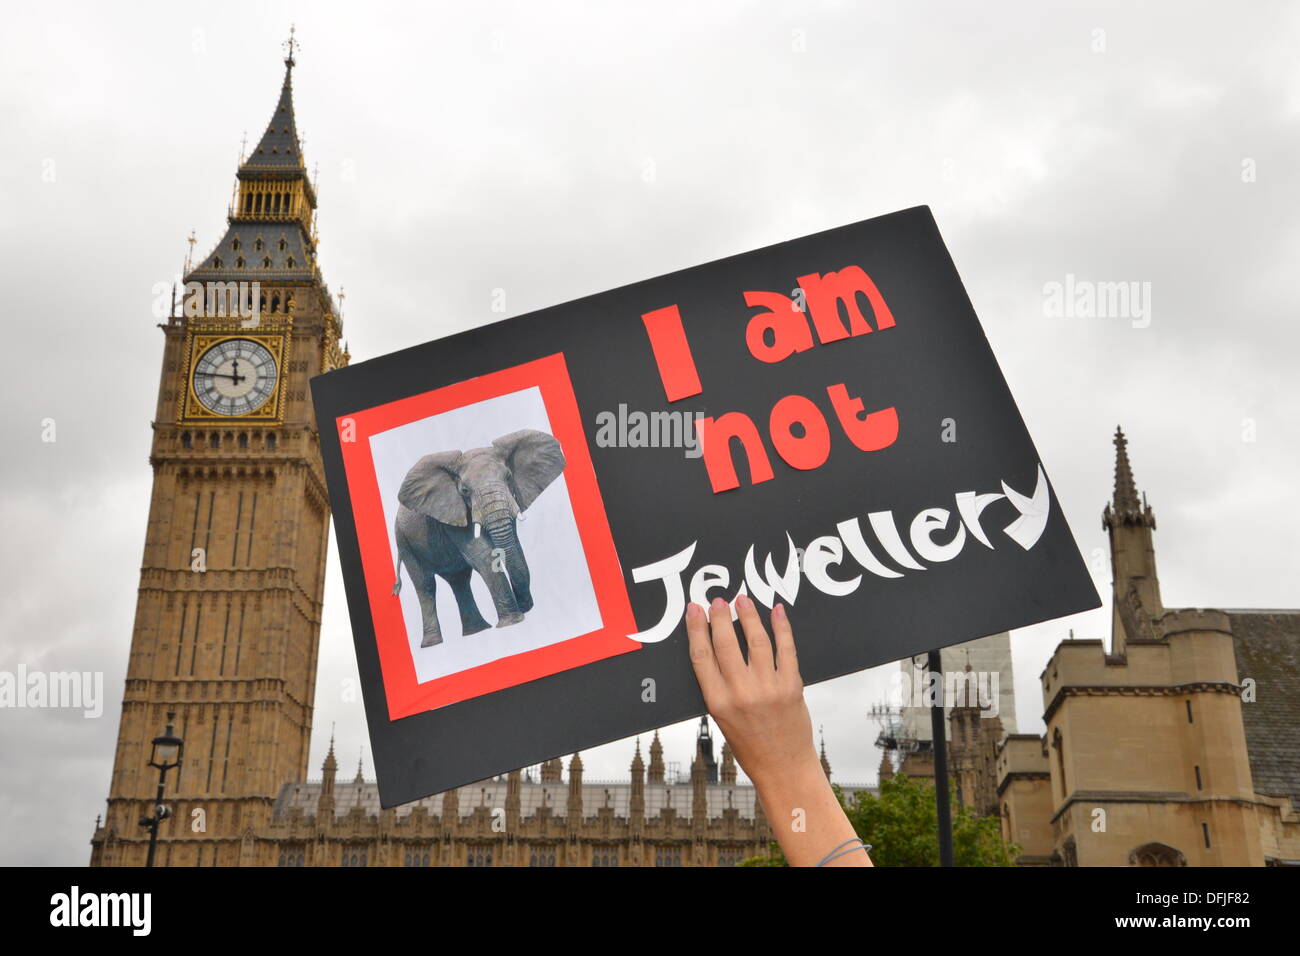 London UK, 4. Oktober 2013: Hunderte von Demonstranten marschieren, Parliament Square, Aufforderung an die Regierung, ein weltweites Verbot von Elfenbein zu unterstützen. Die Demonstranten angesprochen von einem Elefanten getötet alle 15 Minuten um den illegalen Handel mit Elfenbein zu versorgen. Siehe Li / Alamy Live News Stockfoto